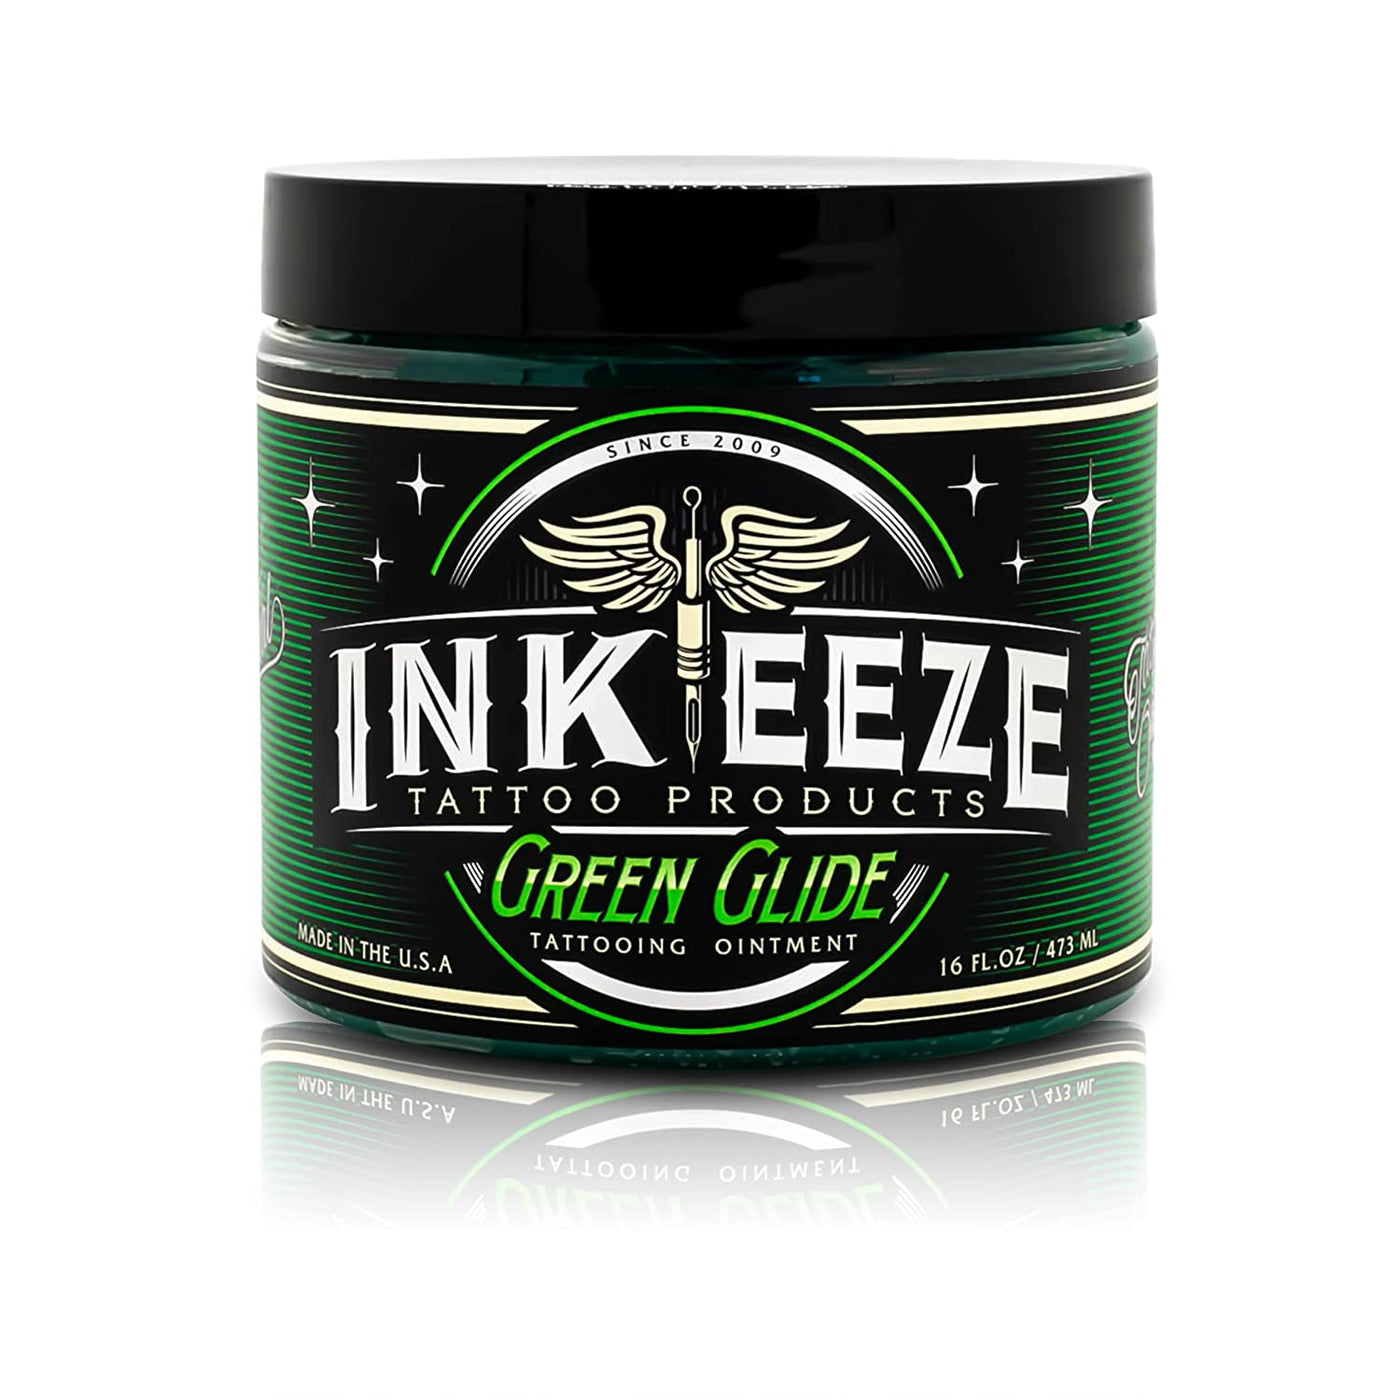 INK EEZE Creams